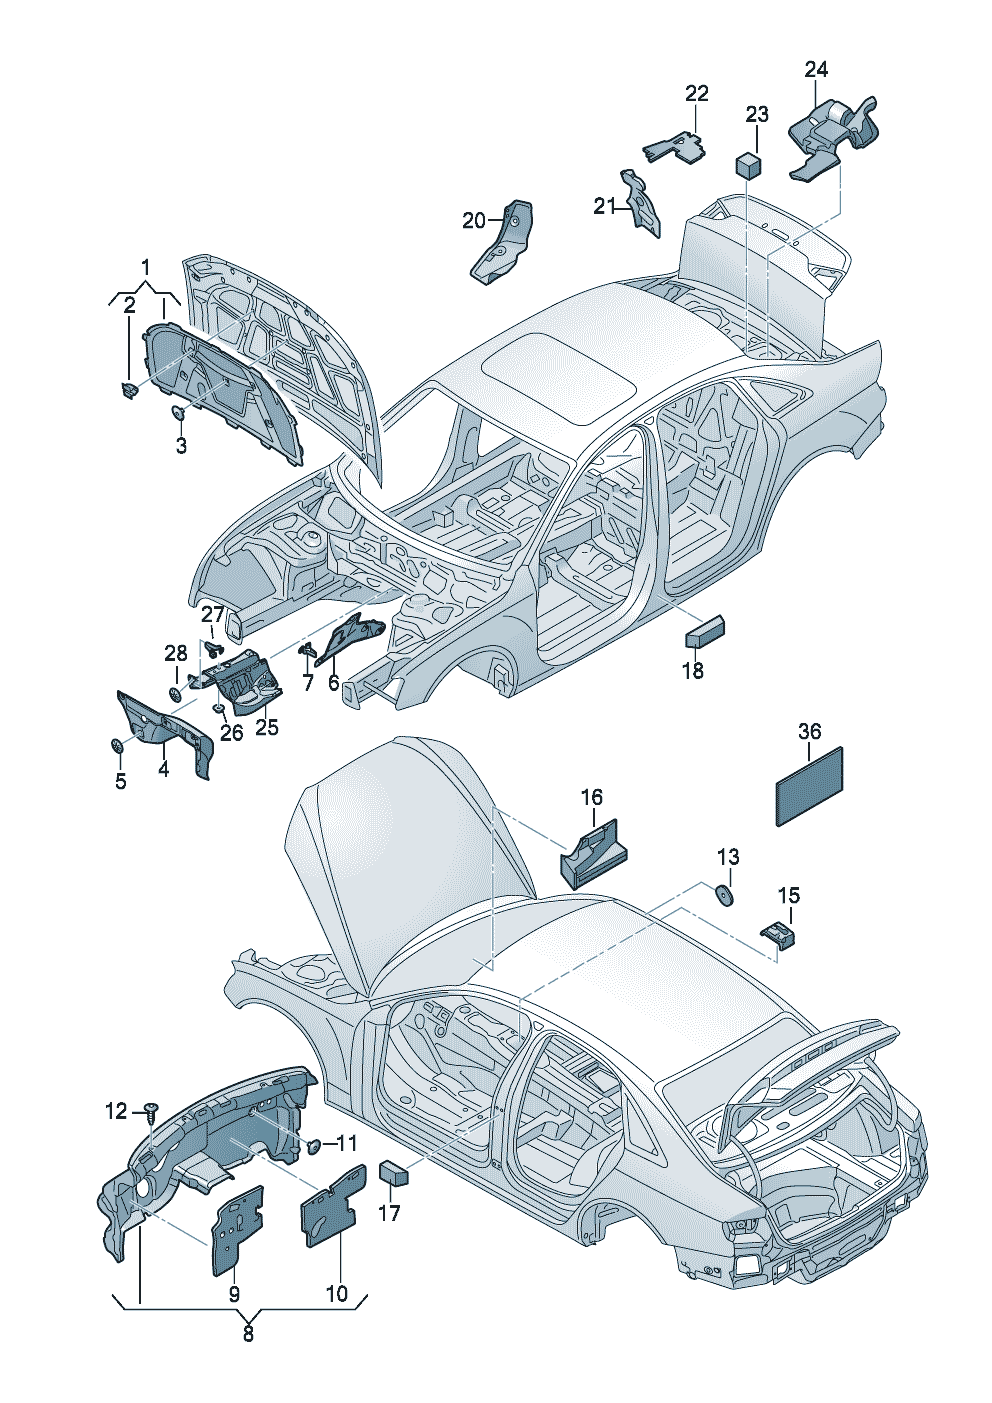 Dämpfung (selbstklebend)Dämpfung<br>(universell verwendbar) BitumenVlies - Audi A4/Avant - a4